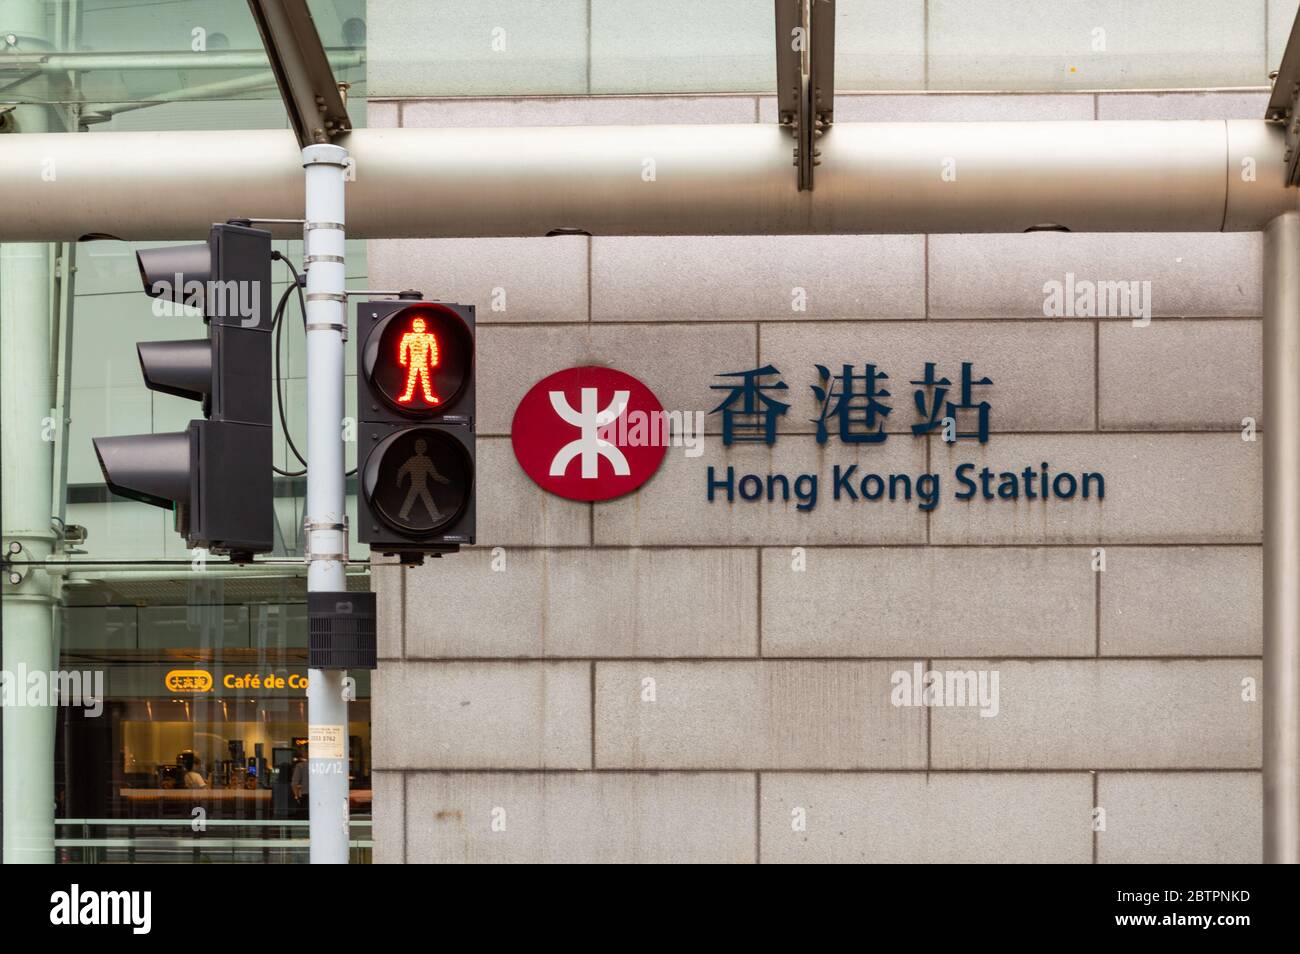 Hongkong / China - 23. Juli 2015: Hong Kong Station des MTR-Metro-Systems in Hongkong, unterhalb des International Finance Centre Stockfoto